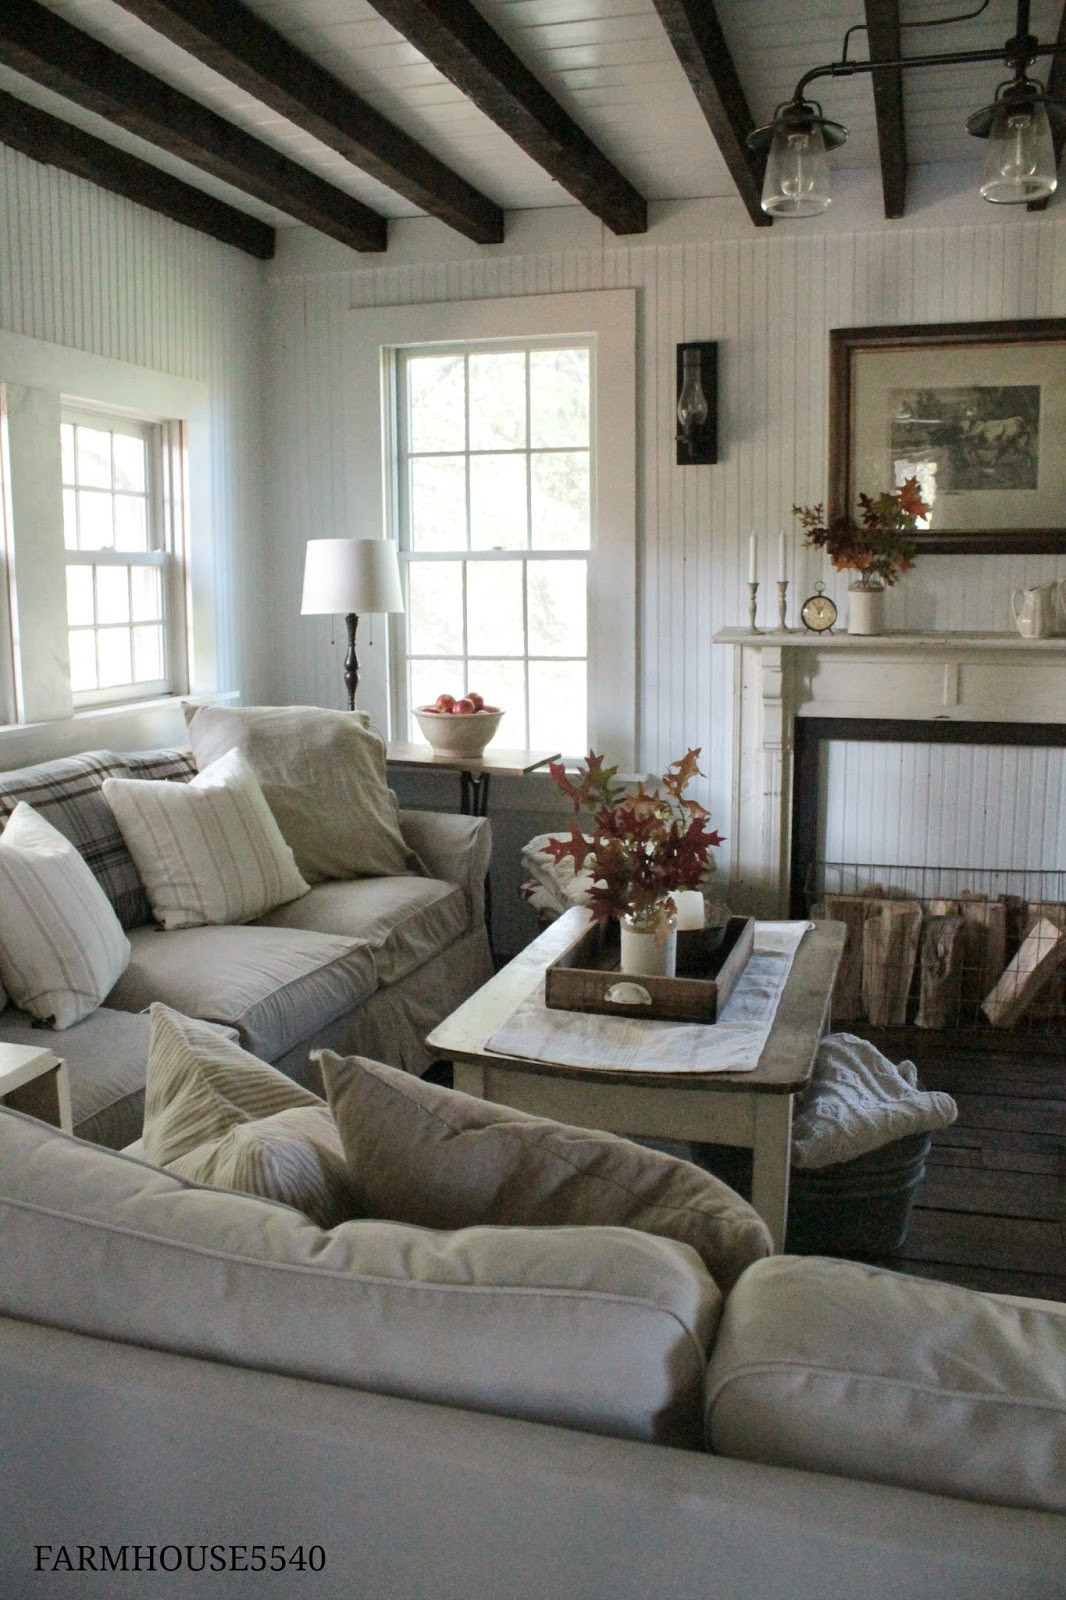 Farmhouse Style Living Room Ideas
 FARMHOUSE 5540 Autumn in the Family Room